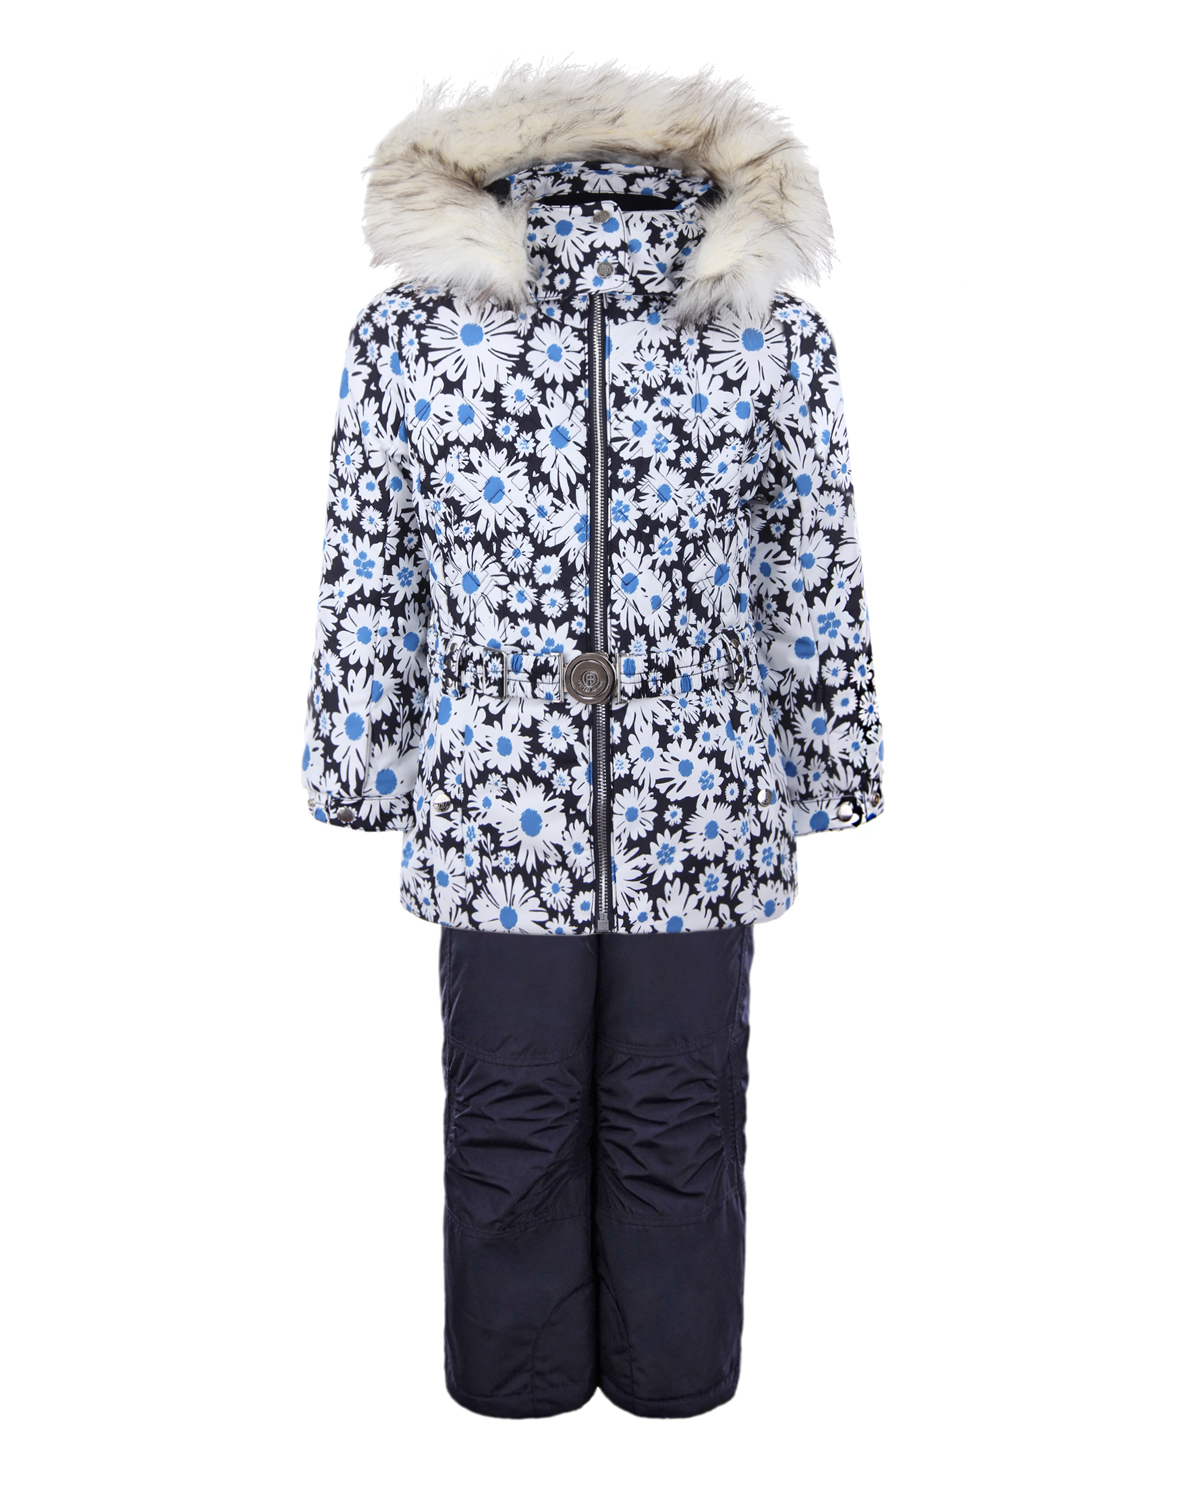 Зимний комплект из куртки и полукомбинезона для девочек Poivre Blanc детский, размер 104, цвет нет цвета - фото 1